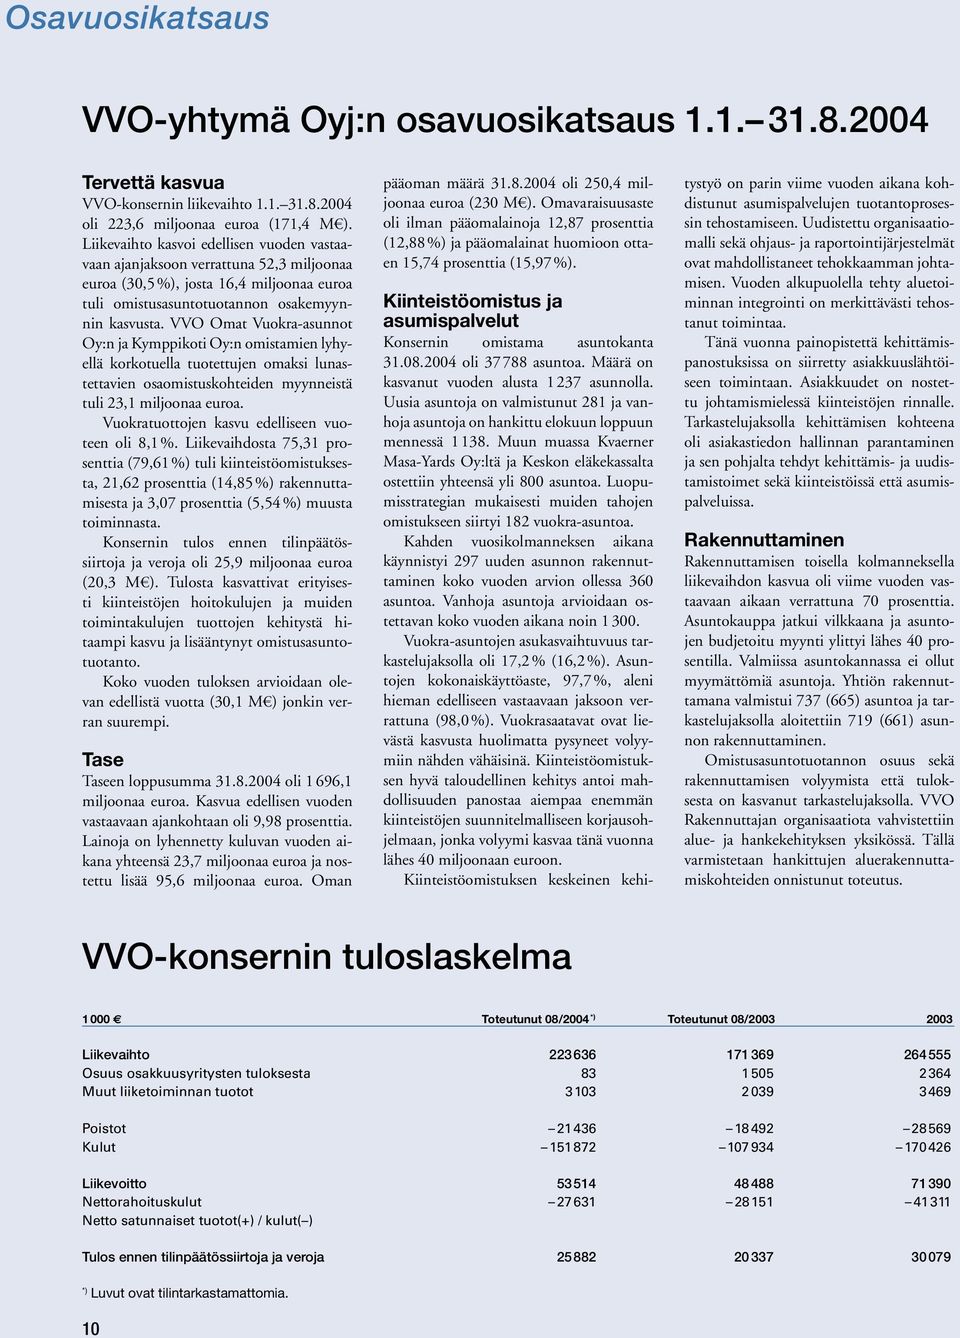 VVO Omat Vuokra-asunnot Oy:n ja Kymppikoti Oy:n omistamien lyhyellä korkotuella tuotettujen omaksi lunastettavien osaomistuskohteiden myynneistä tuli 23,1 miljoonaa euroa.